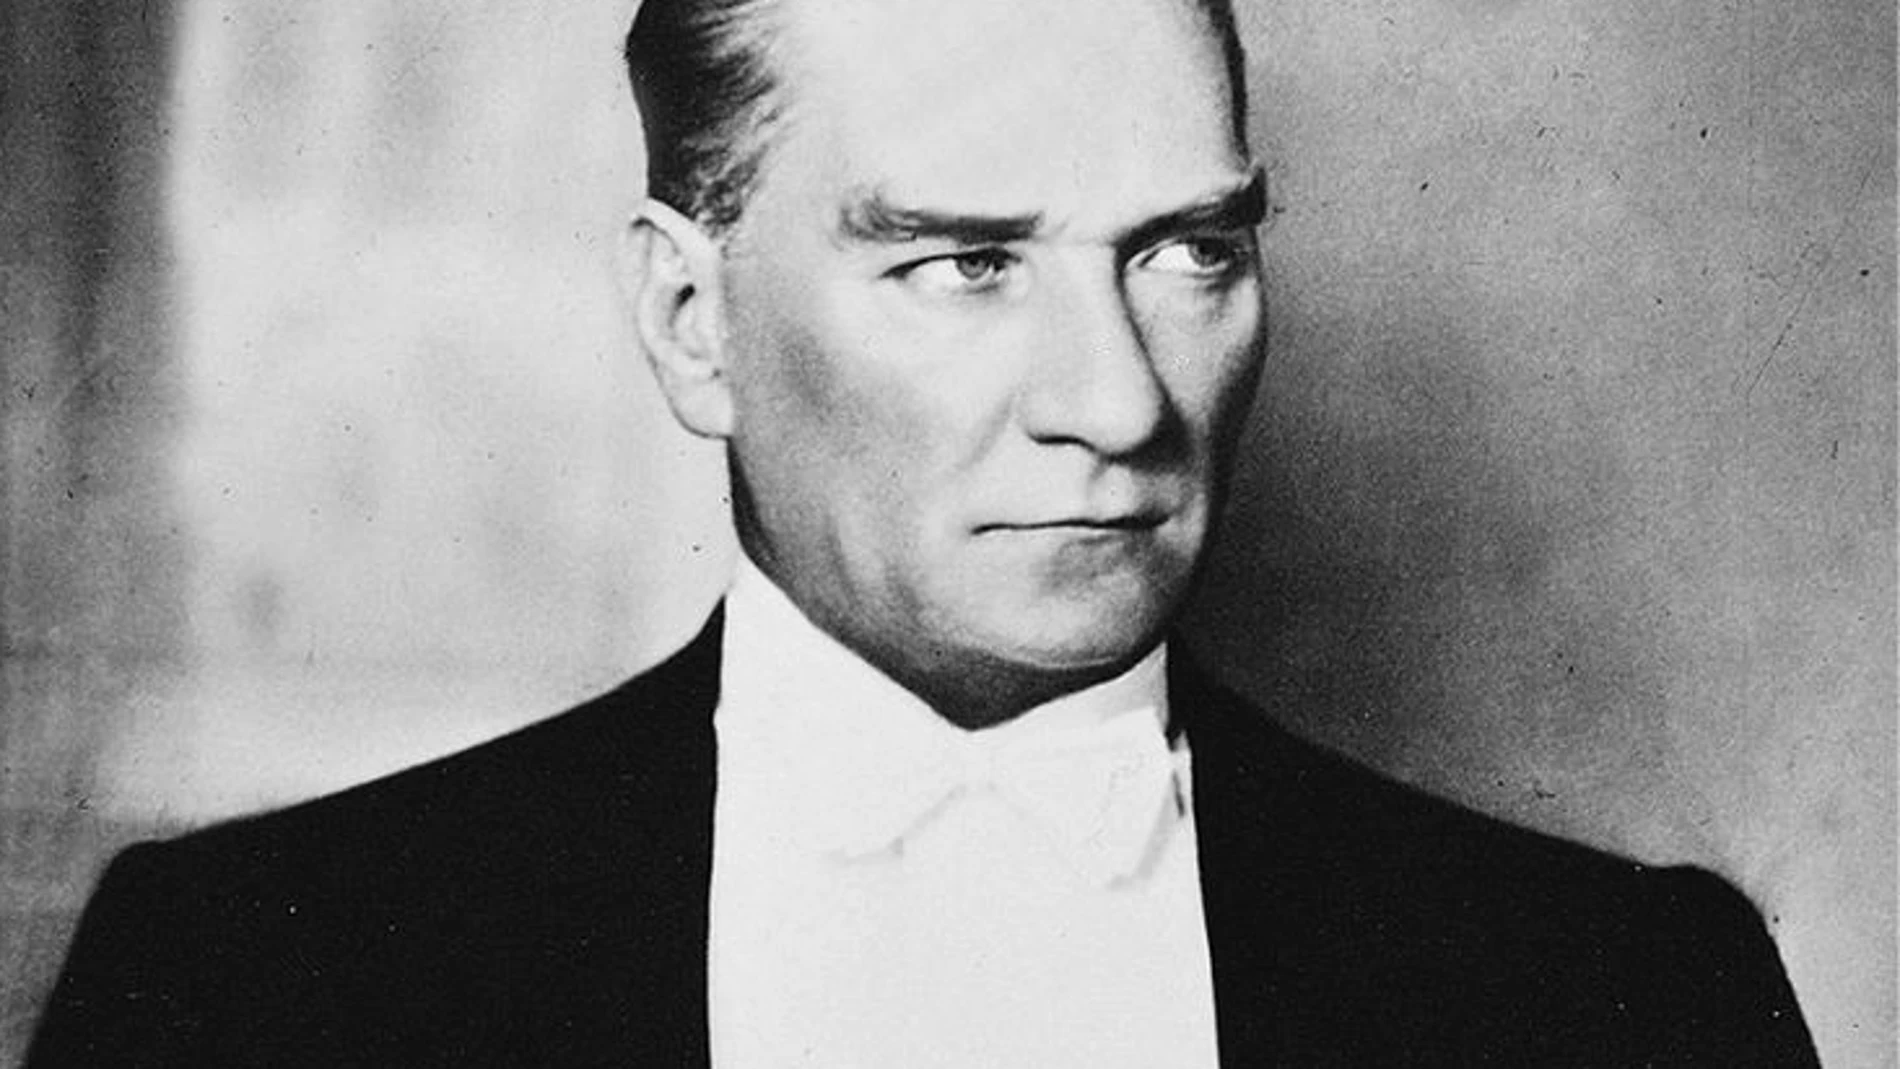 Un retrato del presidente turco Atatürk de la década de 1930